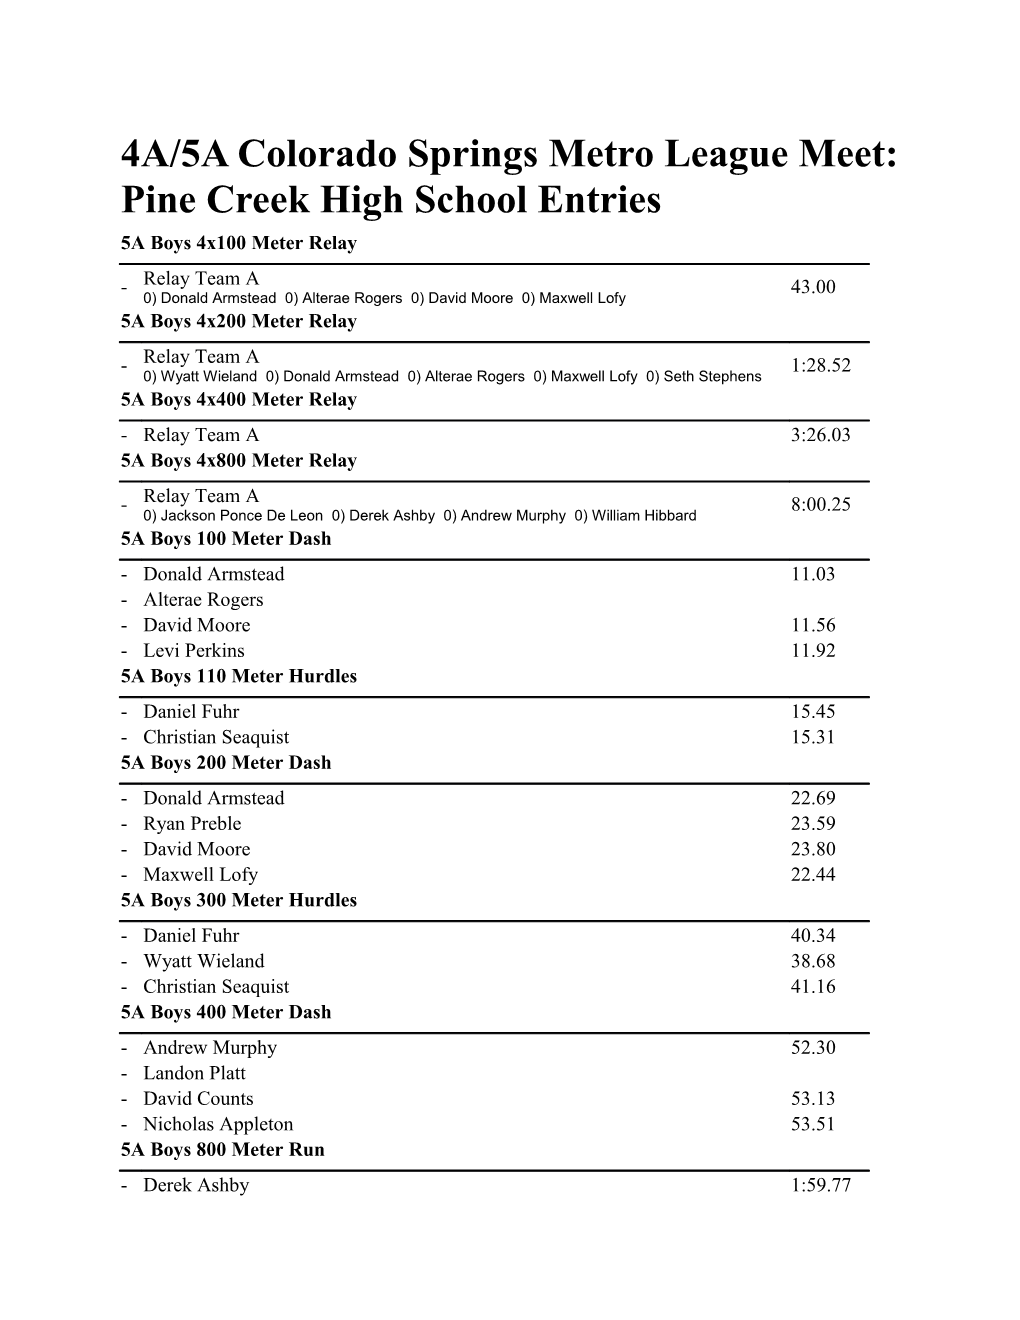 4A/5A Colorado Springs Metro League Meet: Pine Creek High School Entries